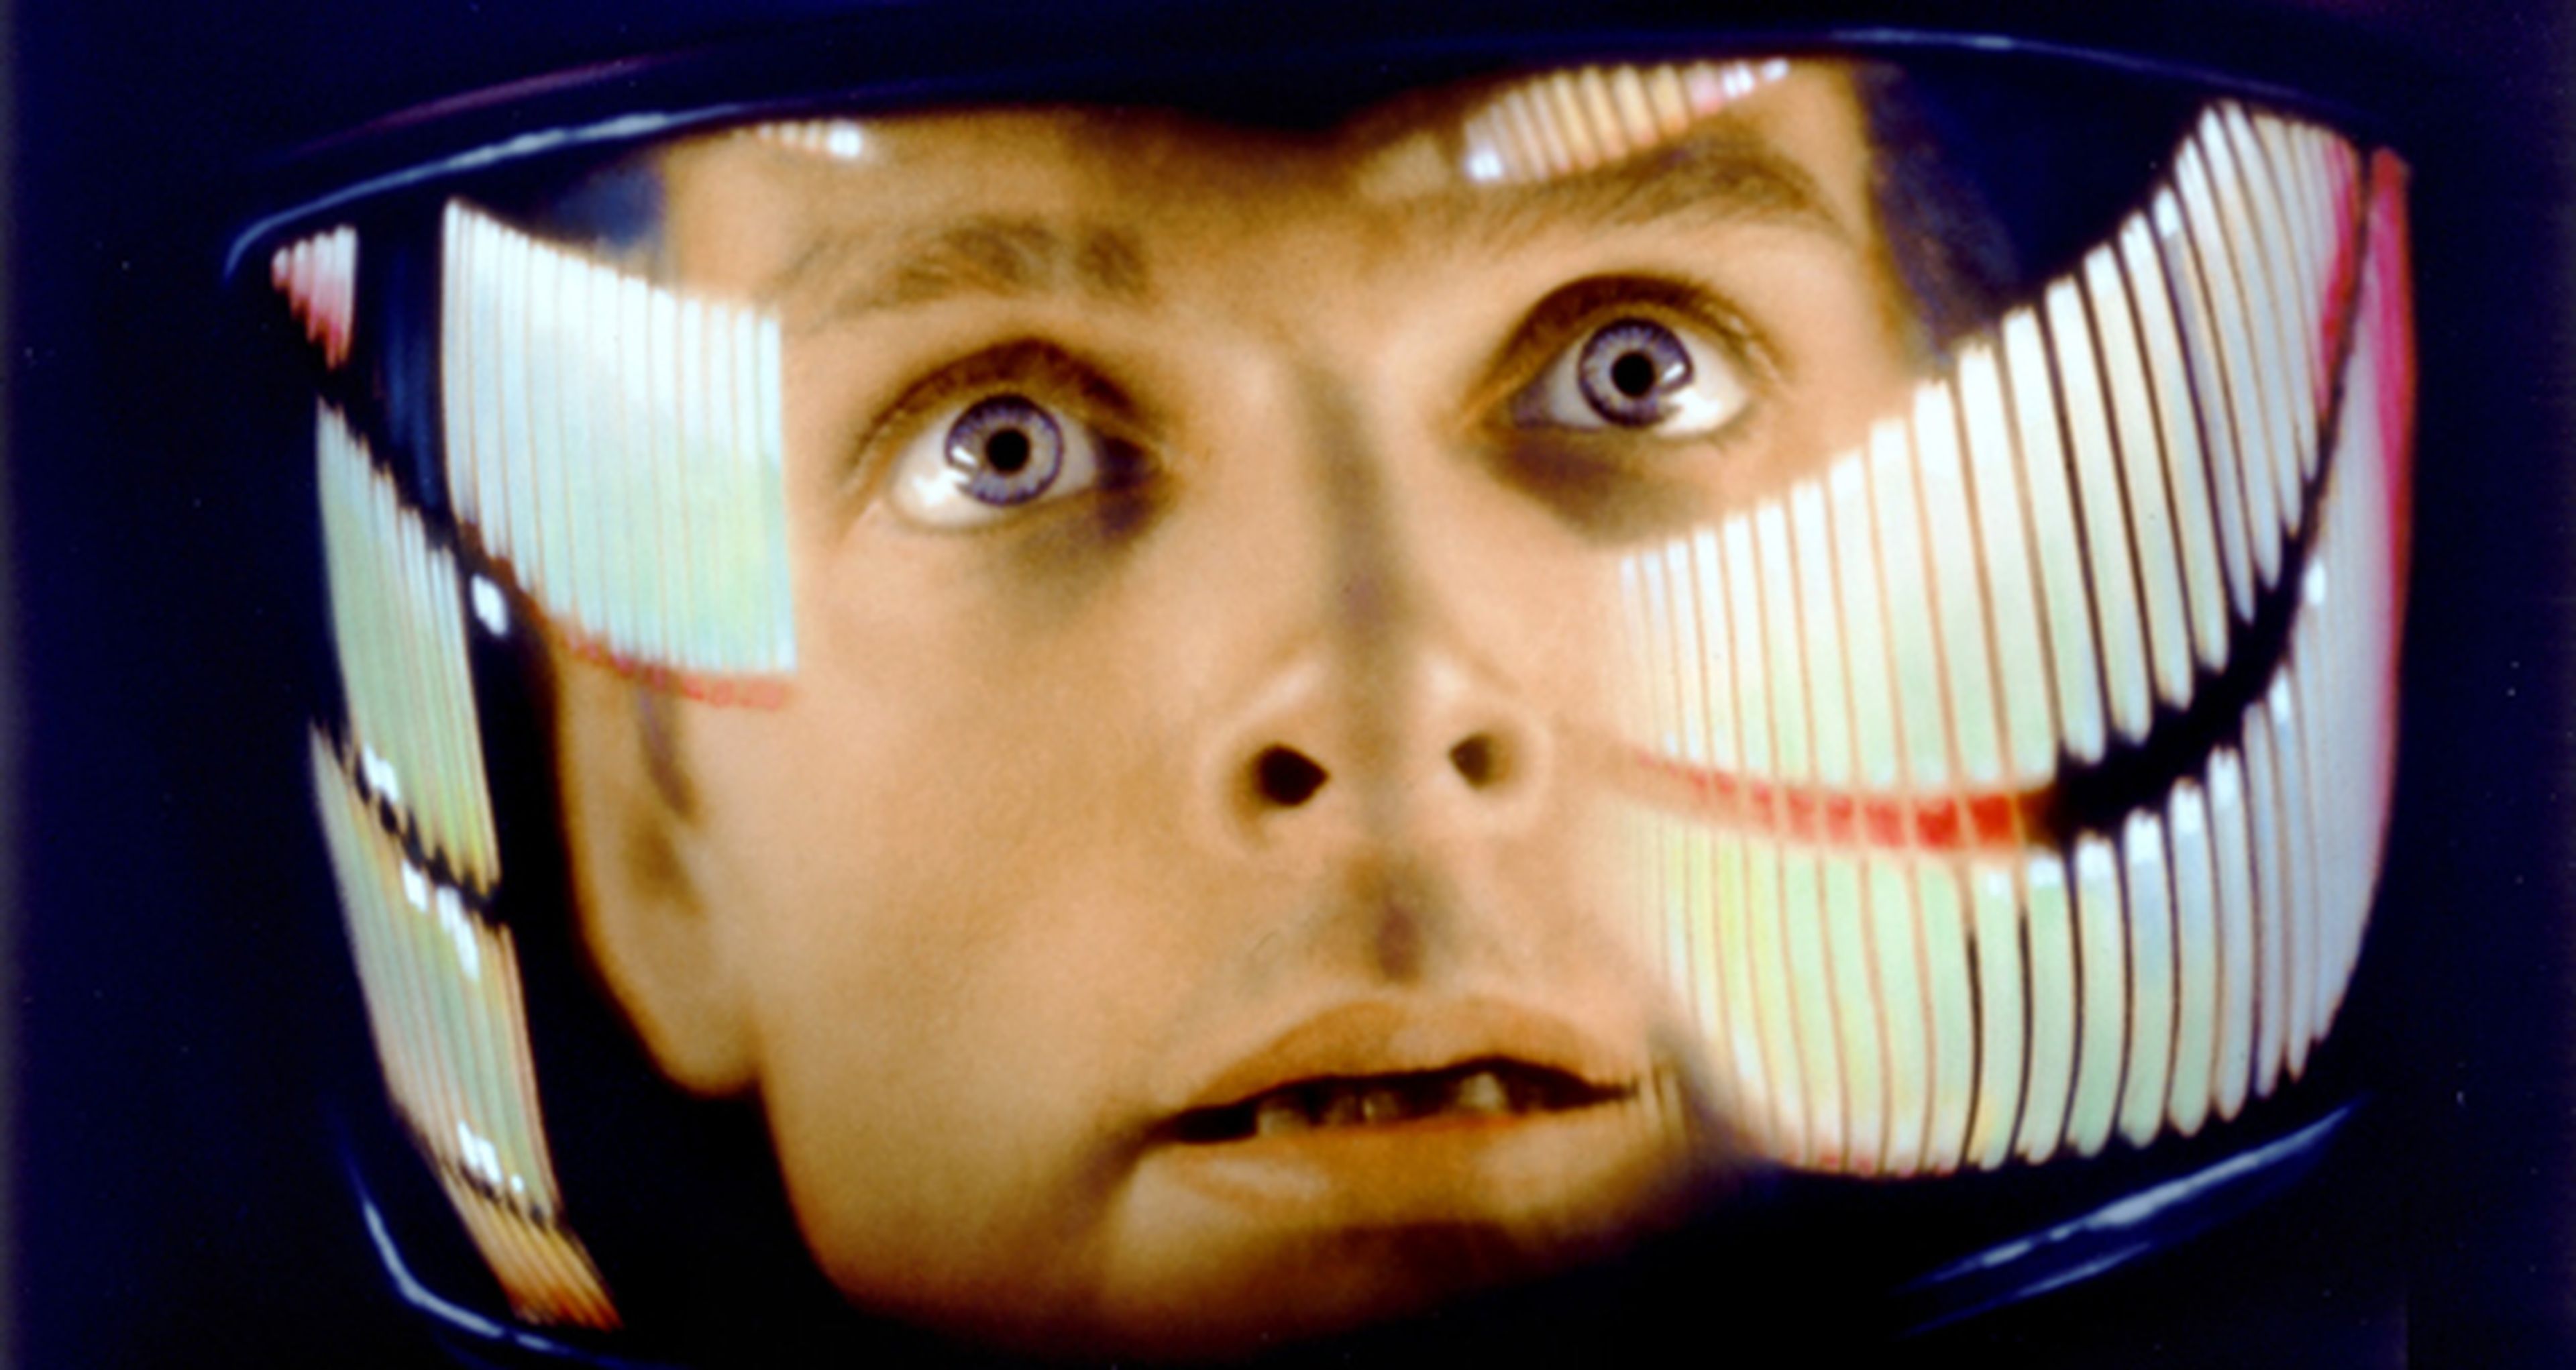 Cine de ciencia ficción: 2001, una odisea del espacio